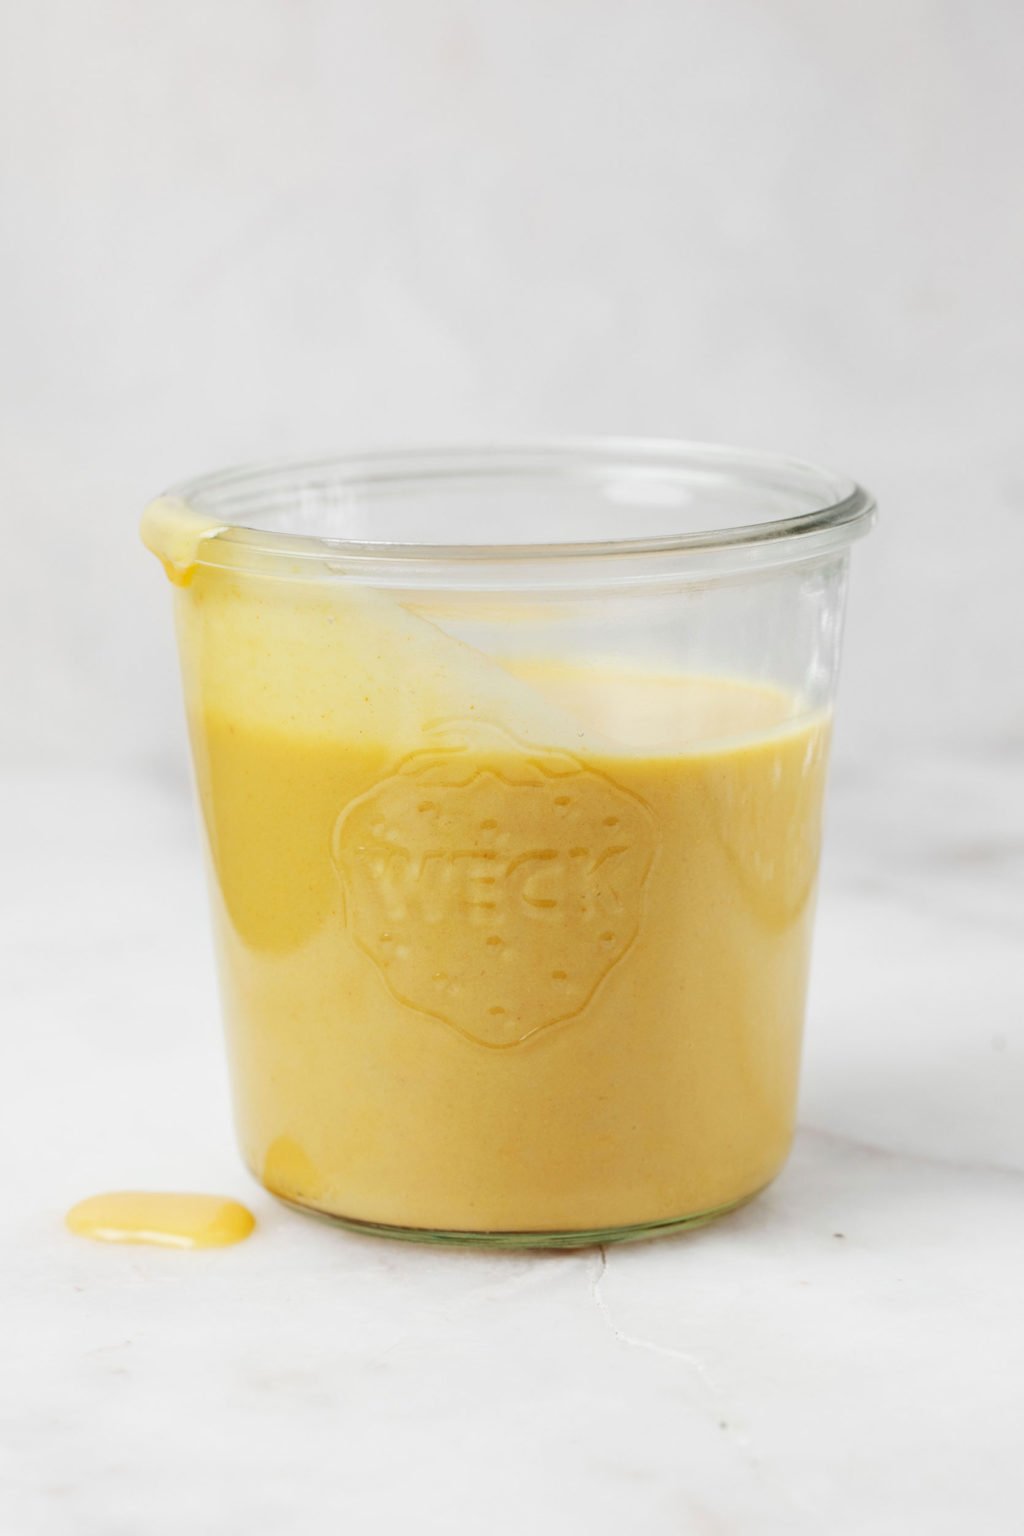 Een glazen pot bevat gele vegan cheddar kaassaus.